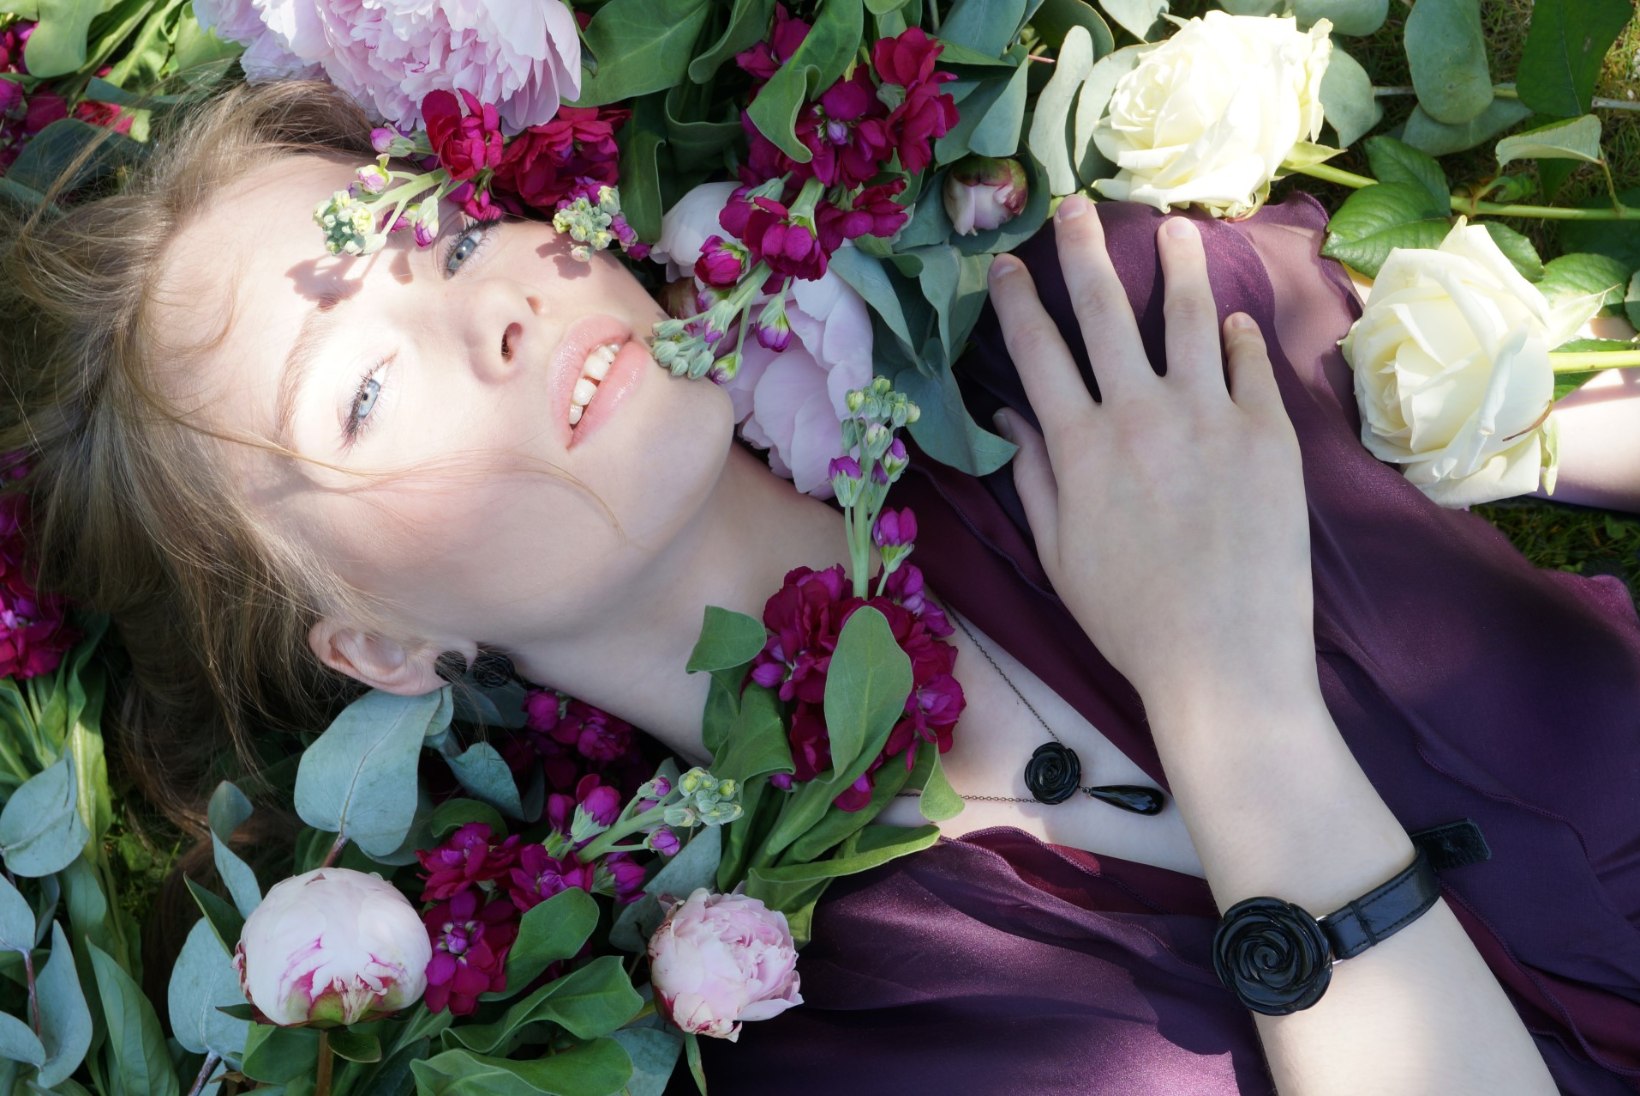 FOTOD | Riina Põldroos tuli välja uue suvise ehtekollektsiooniga